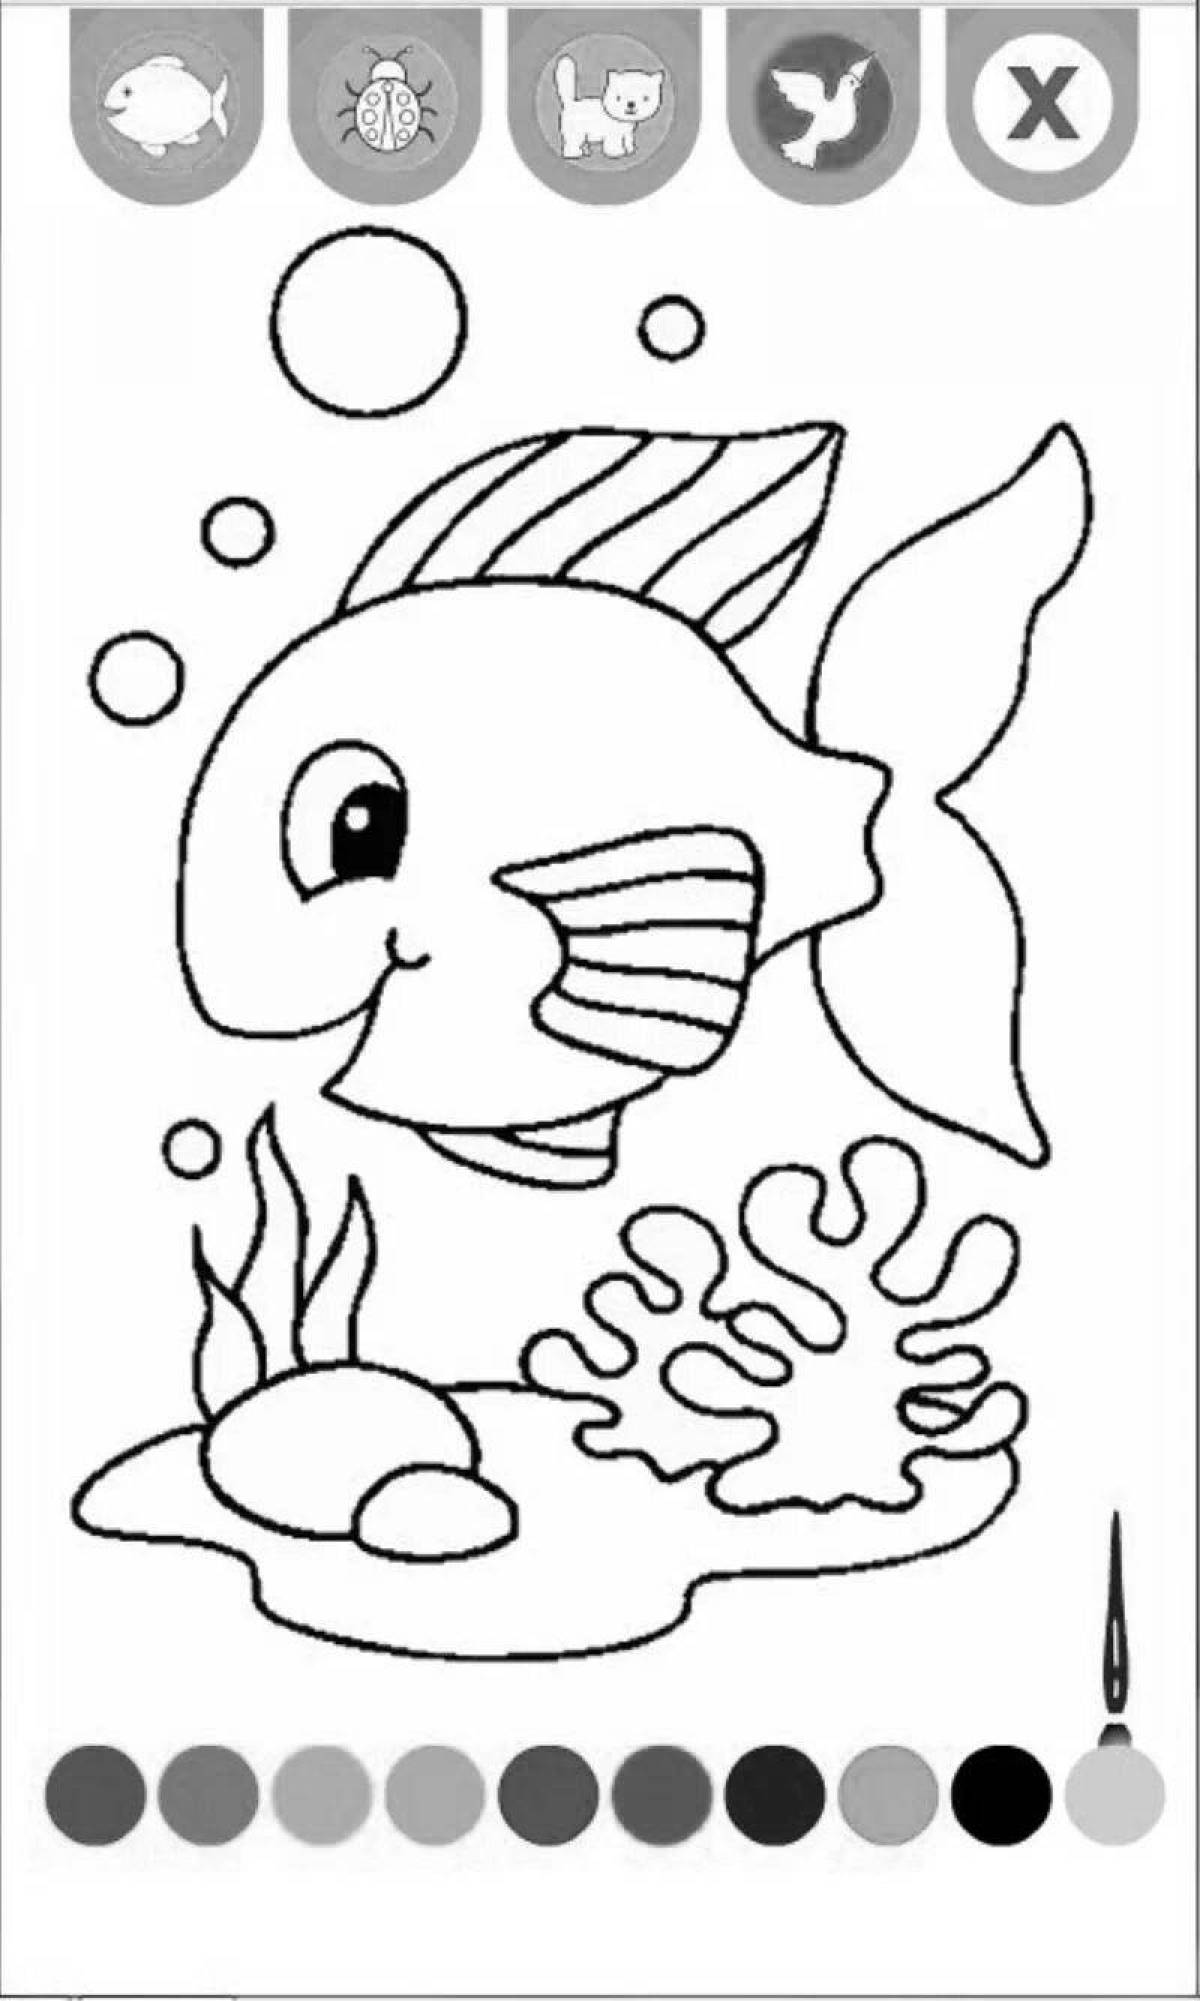 Shiny fish in the aquarium coloring book